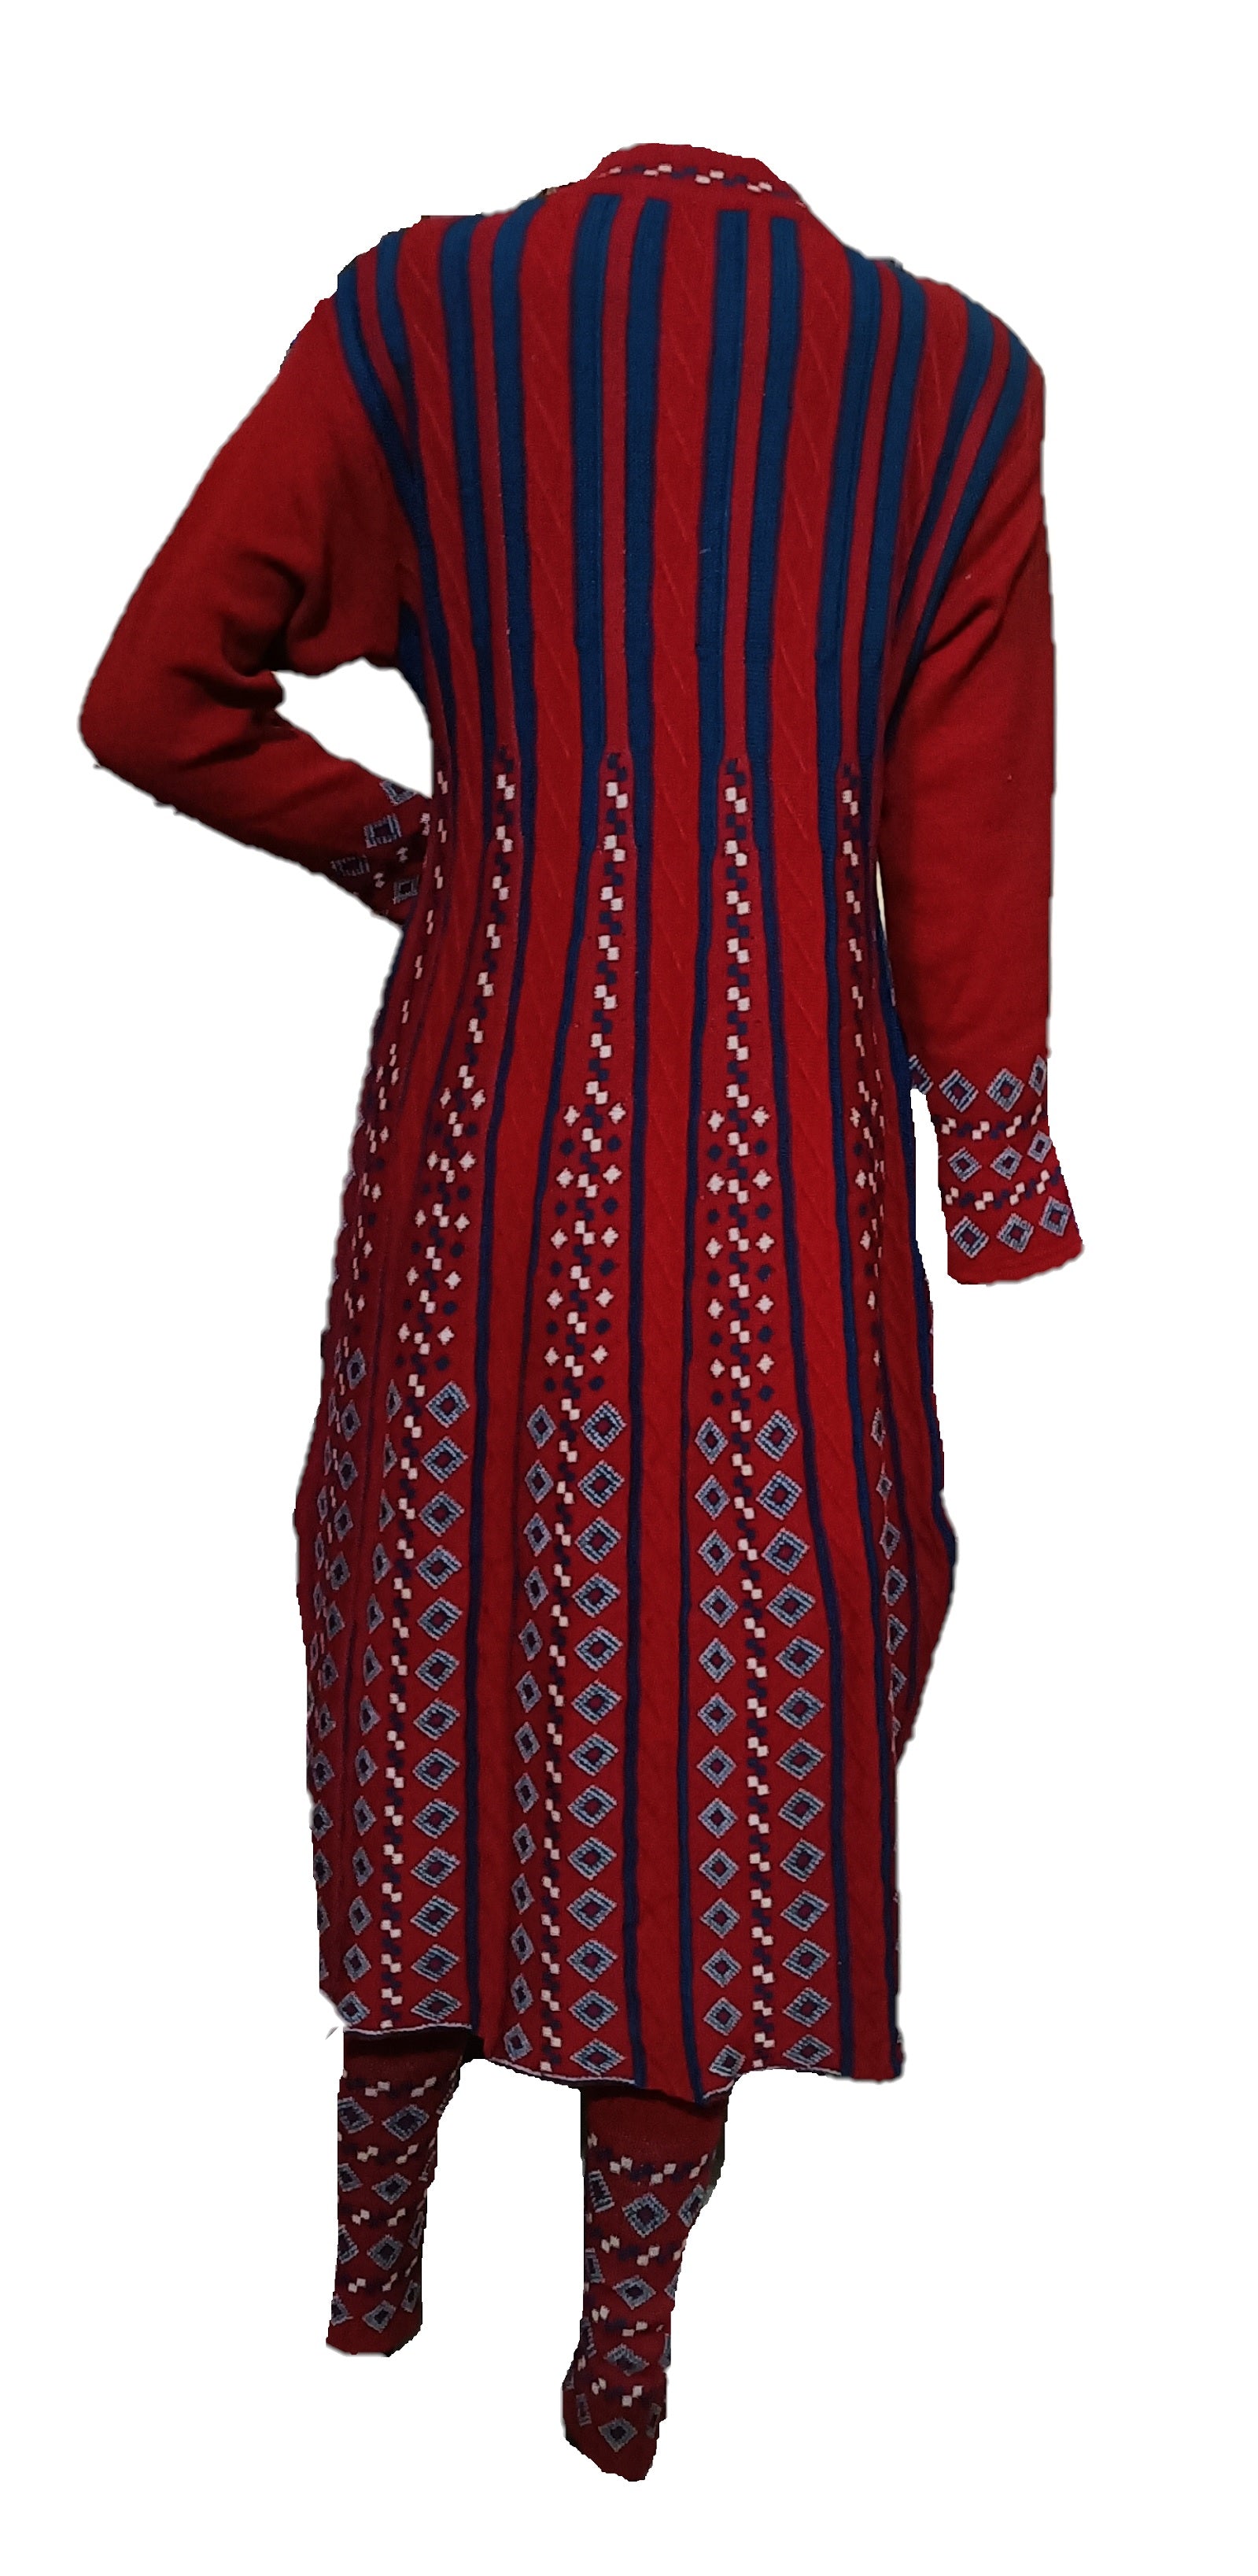 Designer Women Woolen Kurti 102 in Chandigarh at best price by Kartavyaa -  Justdial